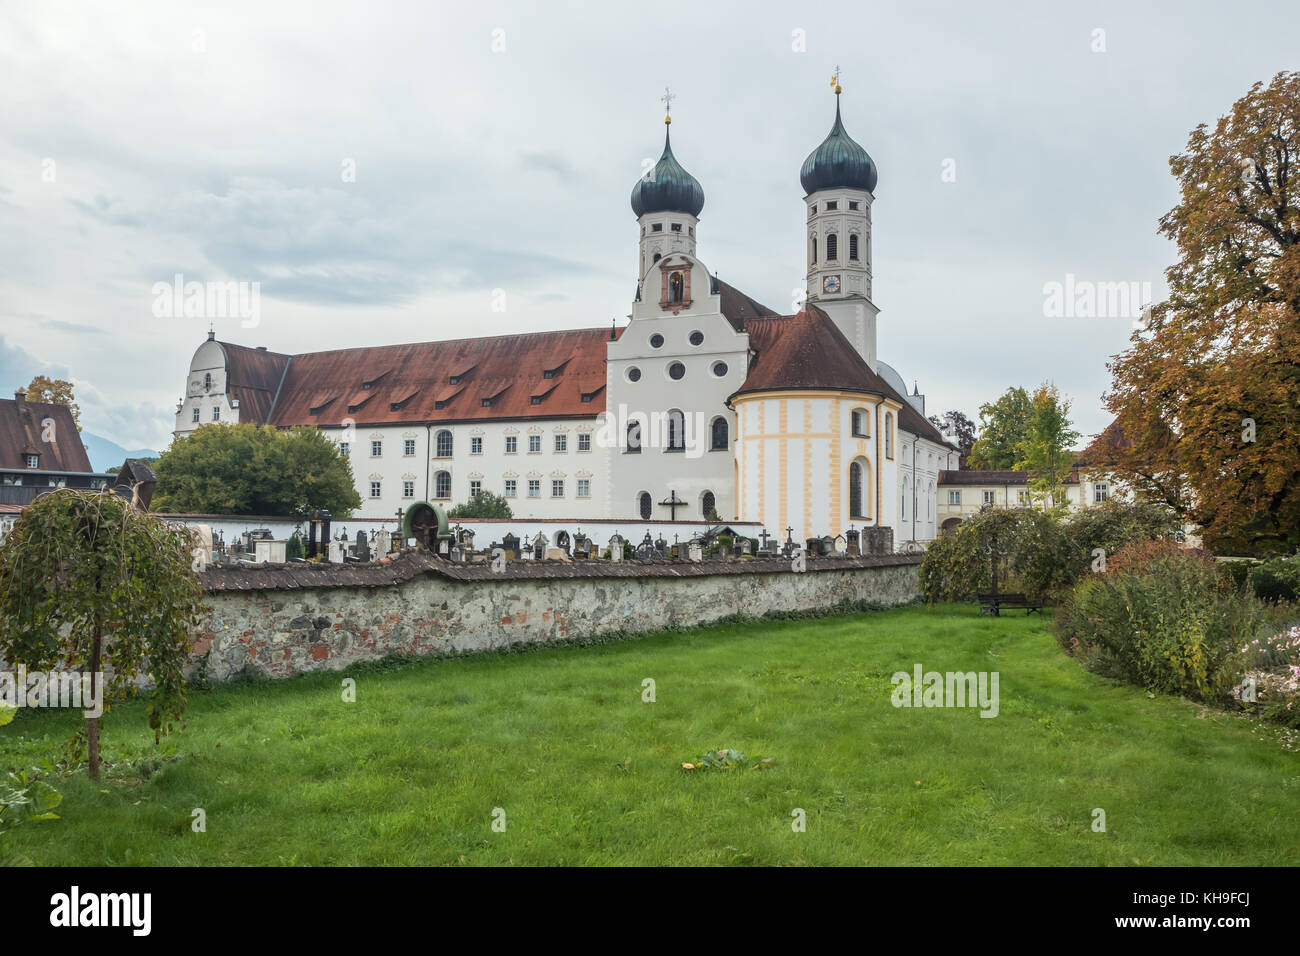 Editoriale: benediktbeueren, Baviera, Germania, 29 settembre 2017 - vista posteriore di benediktbeuern abbazia con il suo cimitero Foto Stock